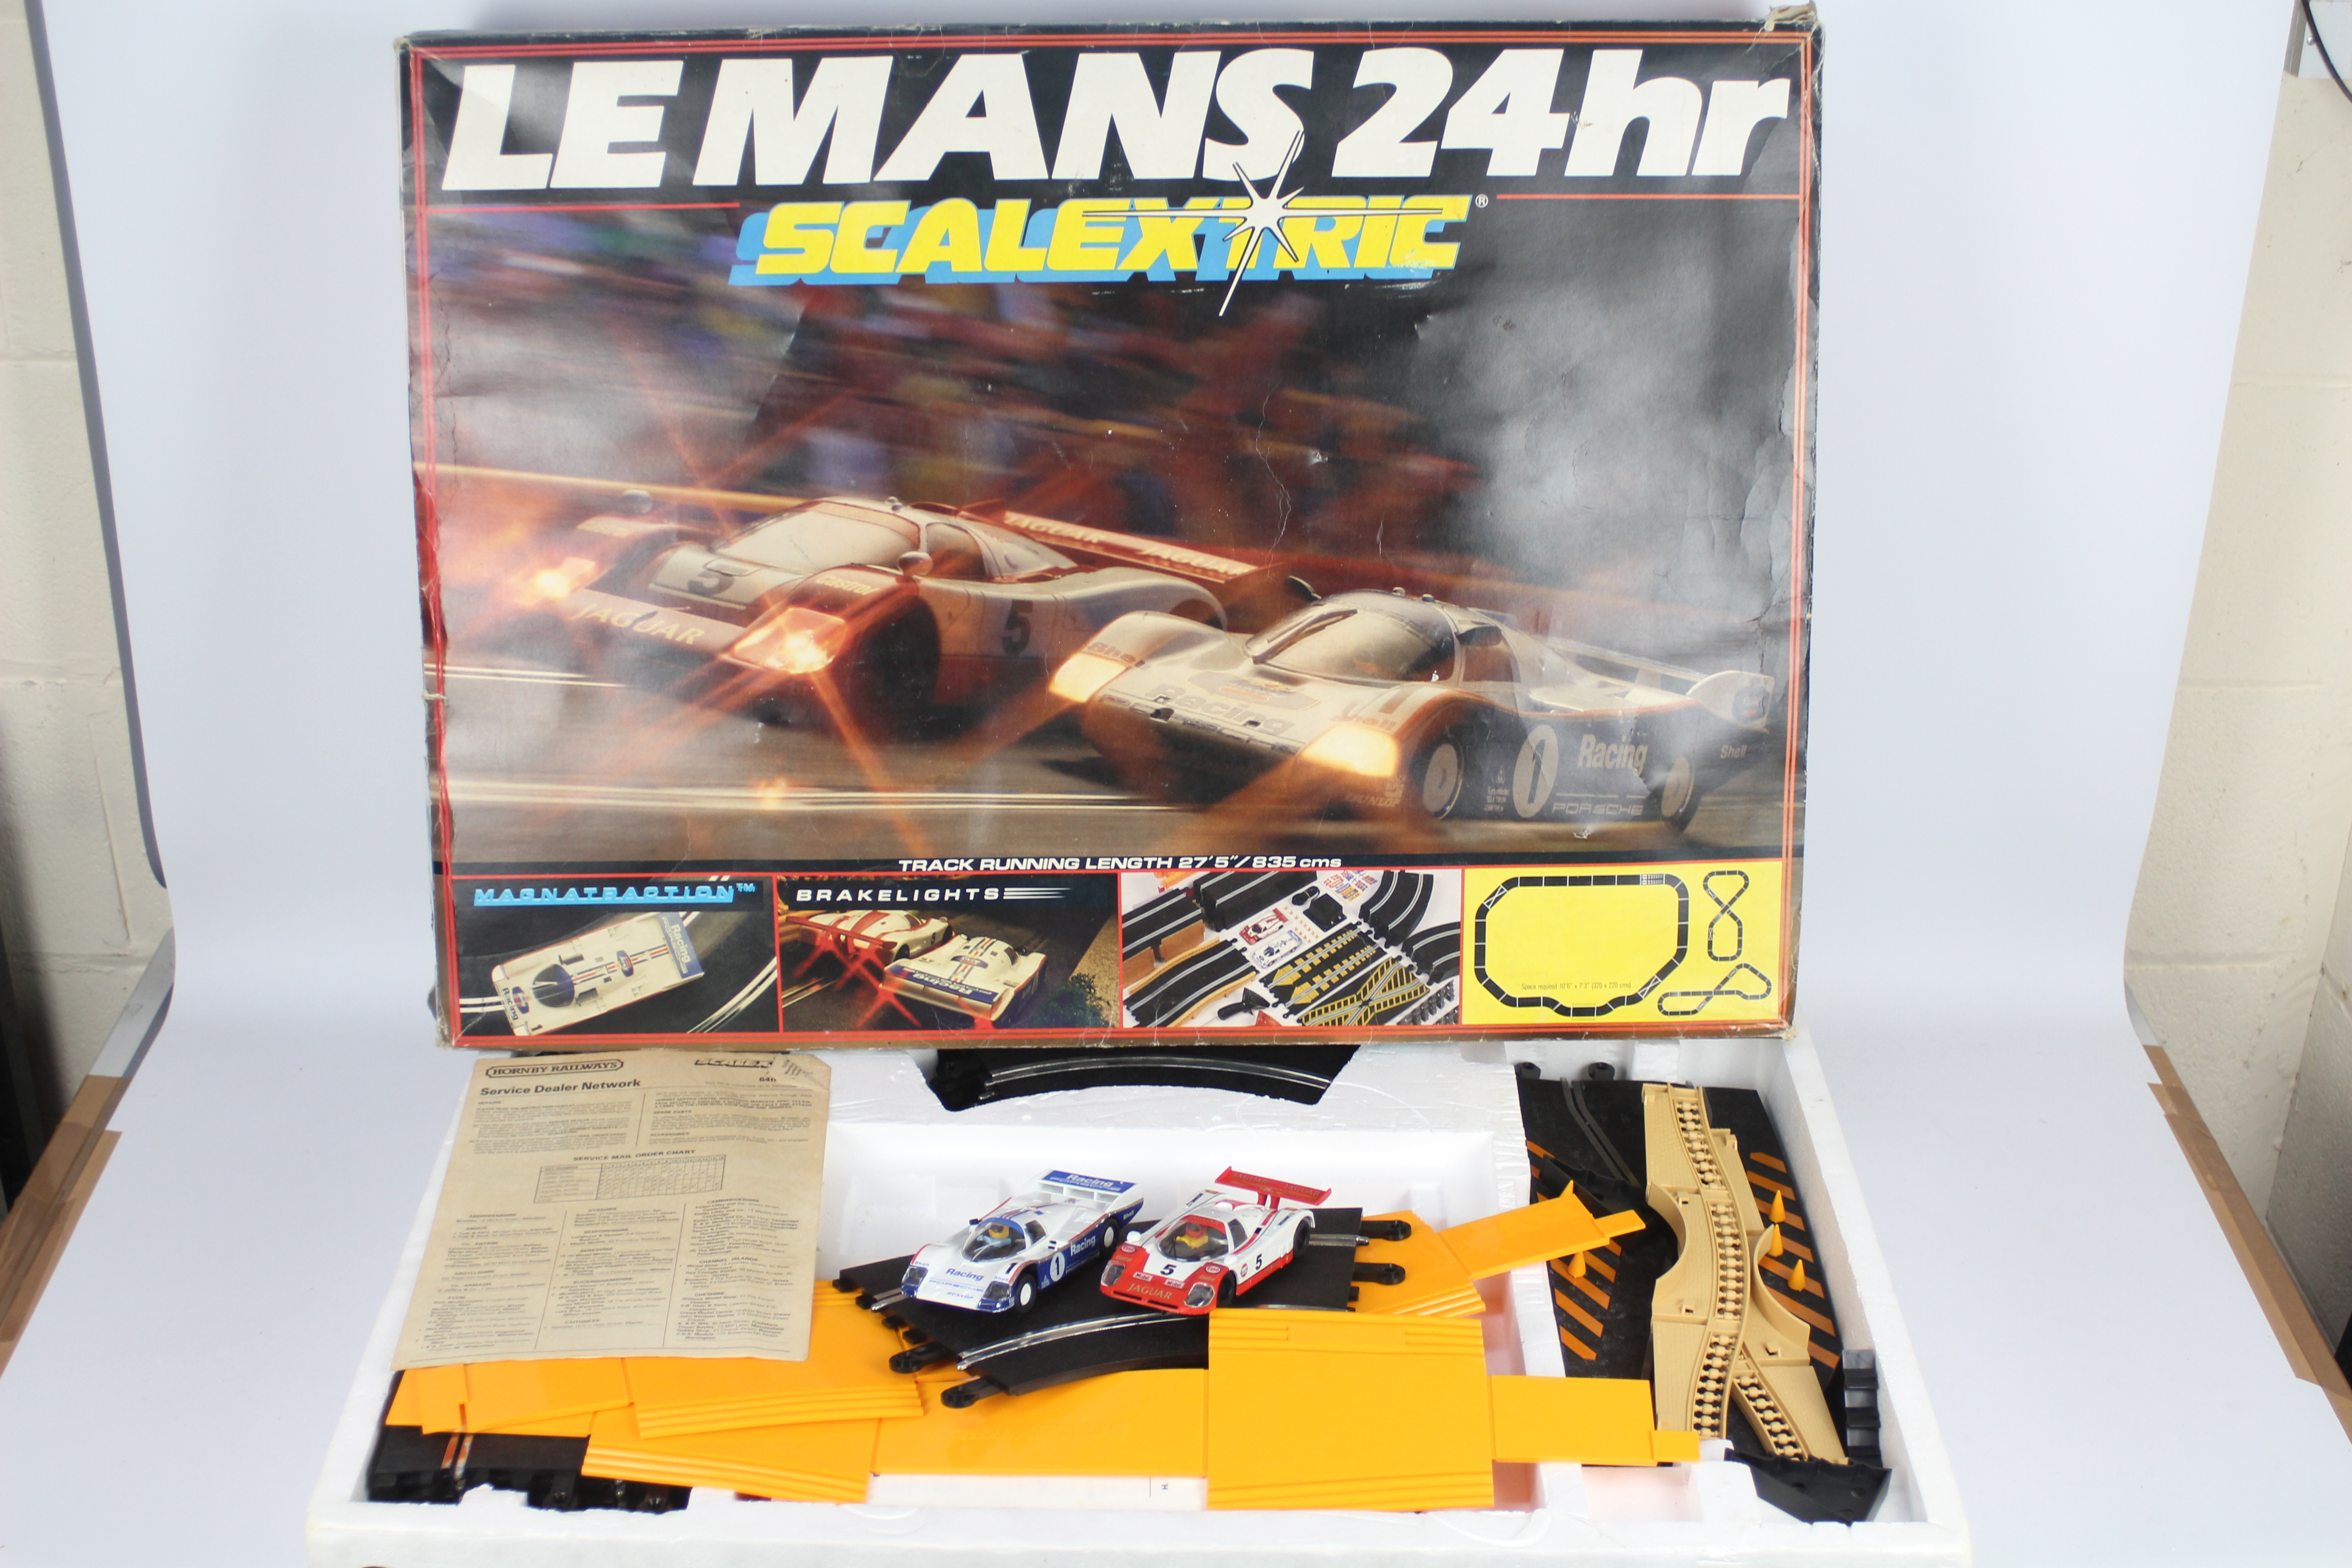 Scalextric - 2 x vintage boxed sets, # C.742 Le Mans 24 Hour set x 2. - Image 2 of 5